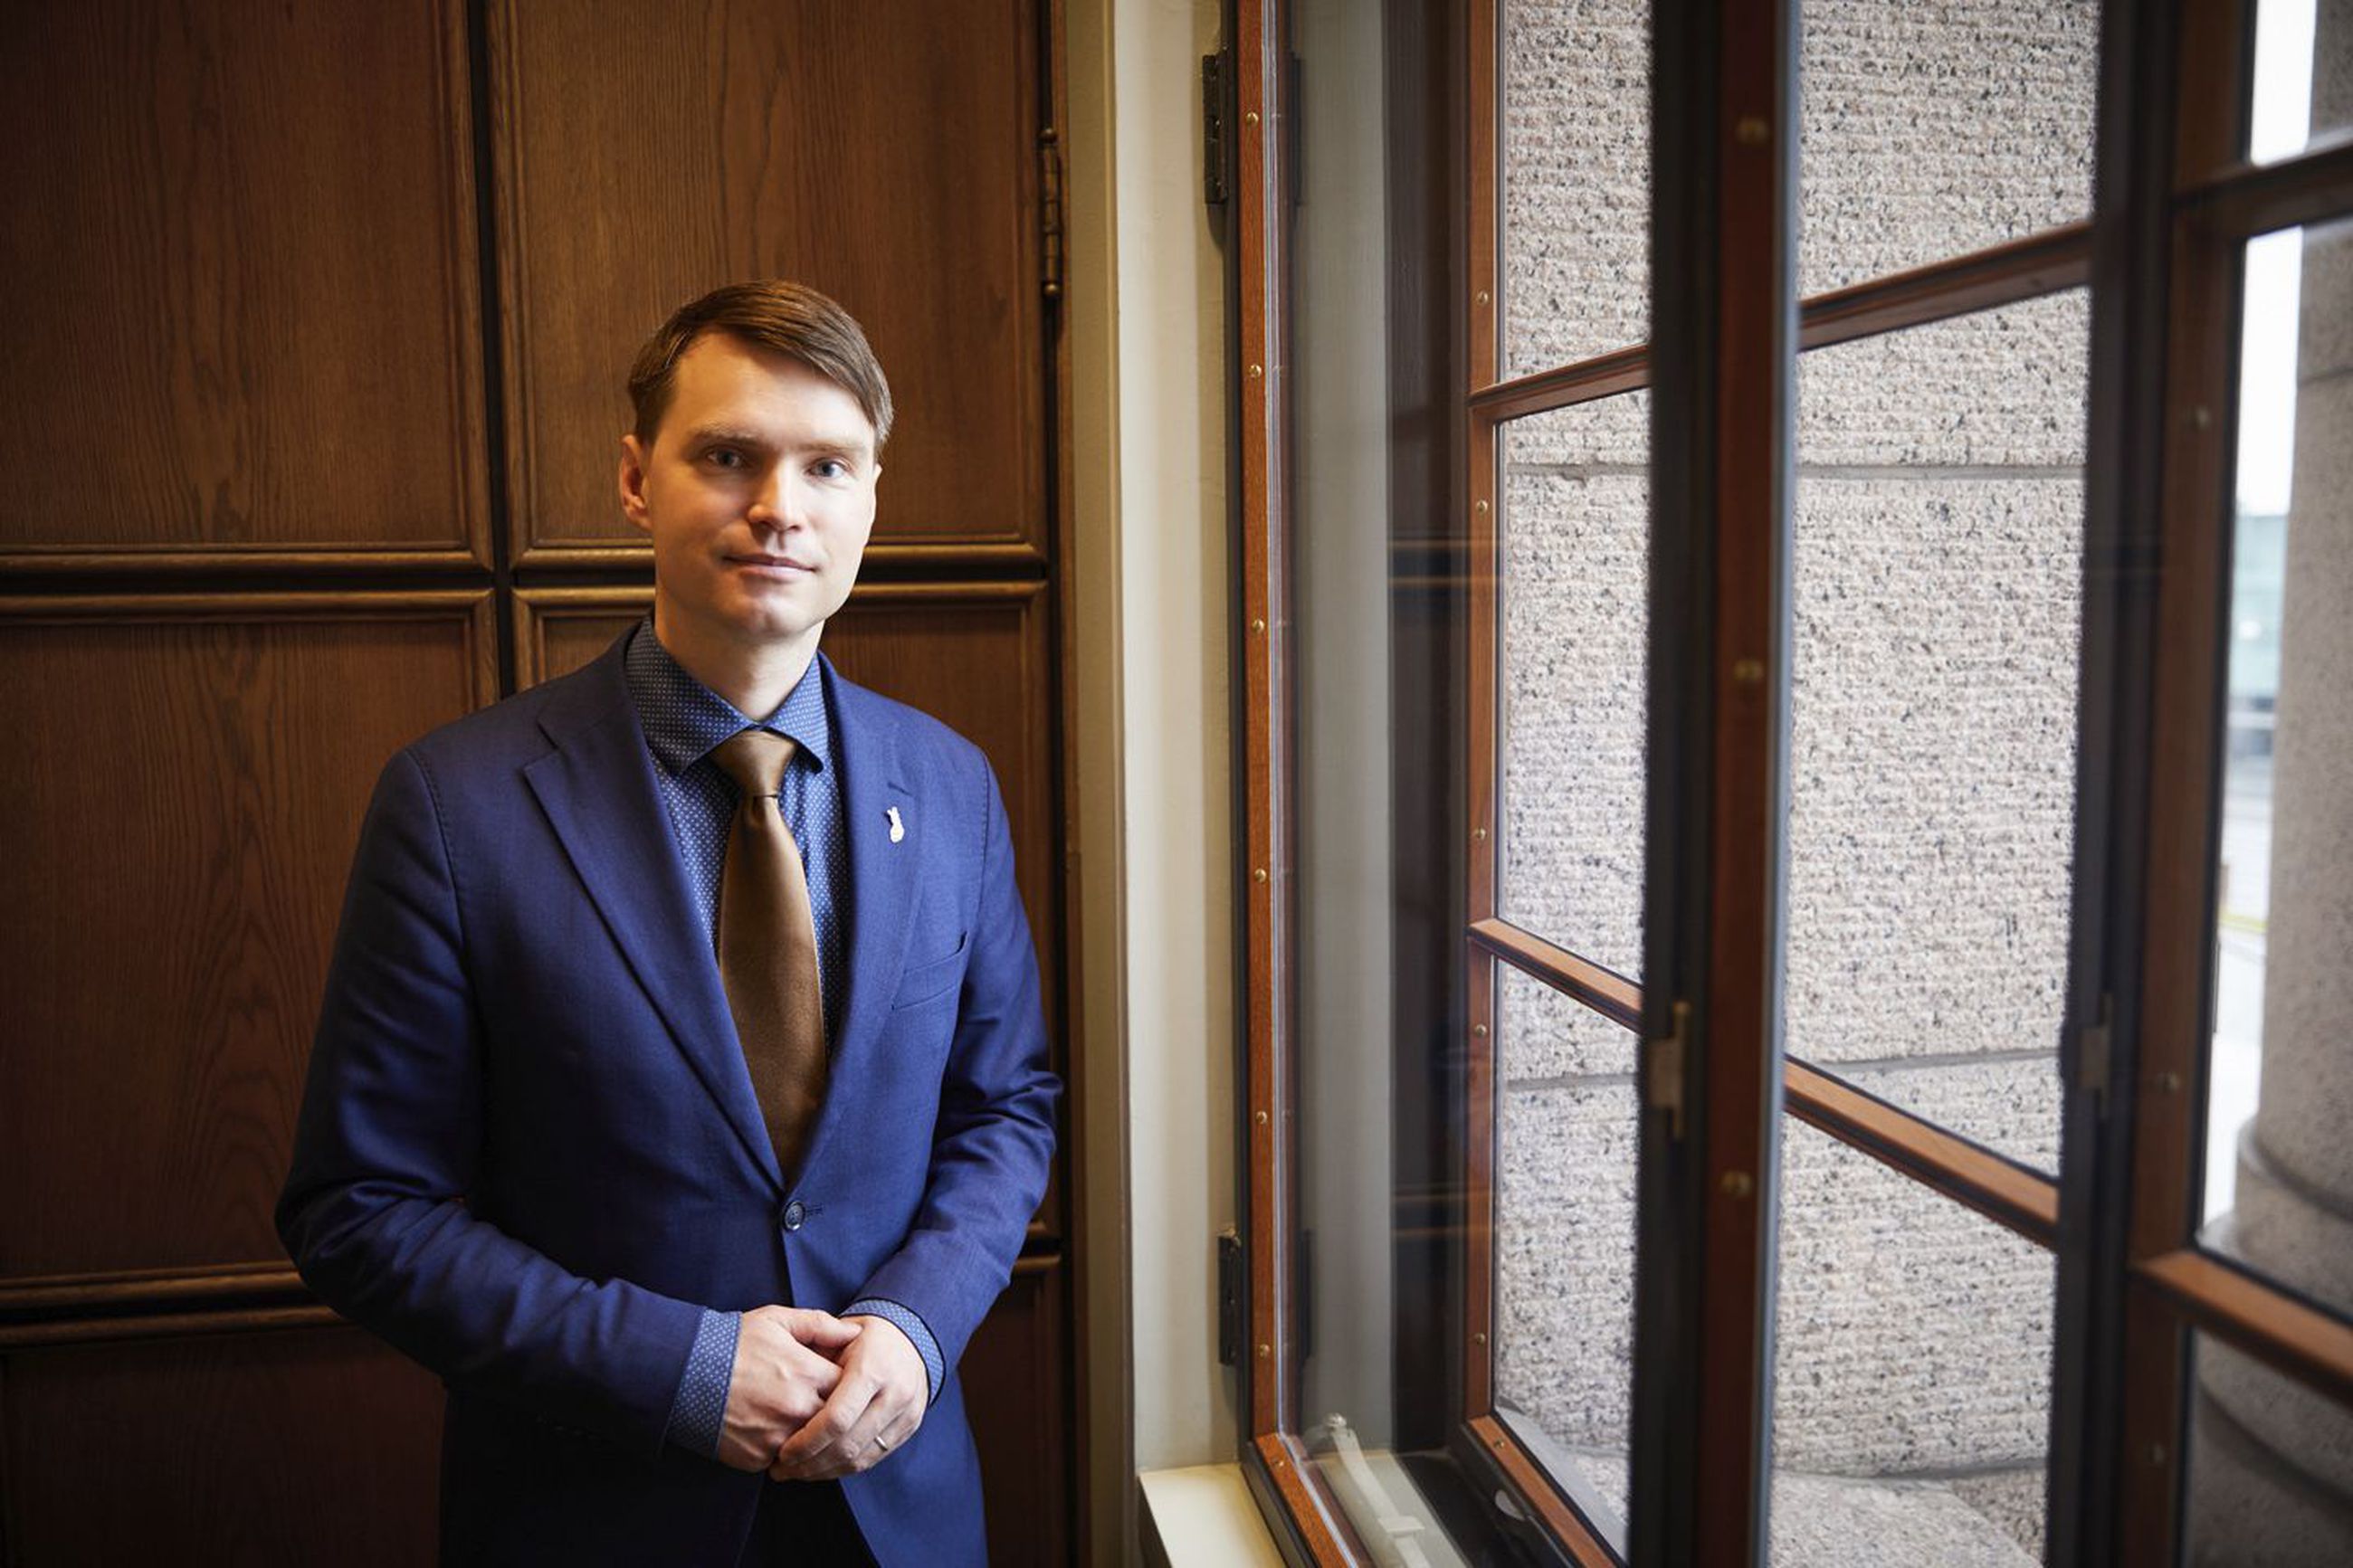 Kokoomuksen kansanedustaja Heikki Autto haluaa, että kouluissa palataan perusasioiden äärelle.